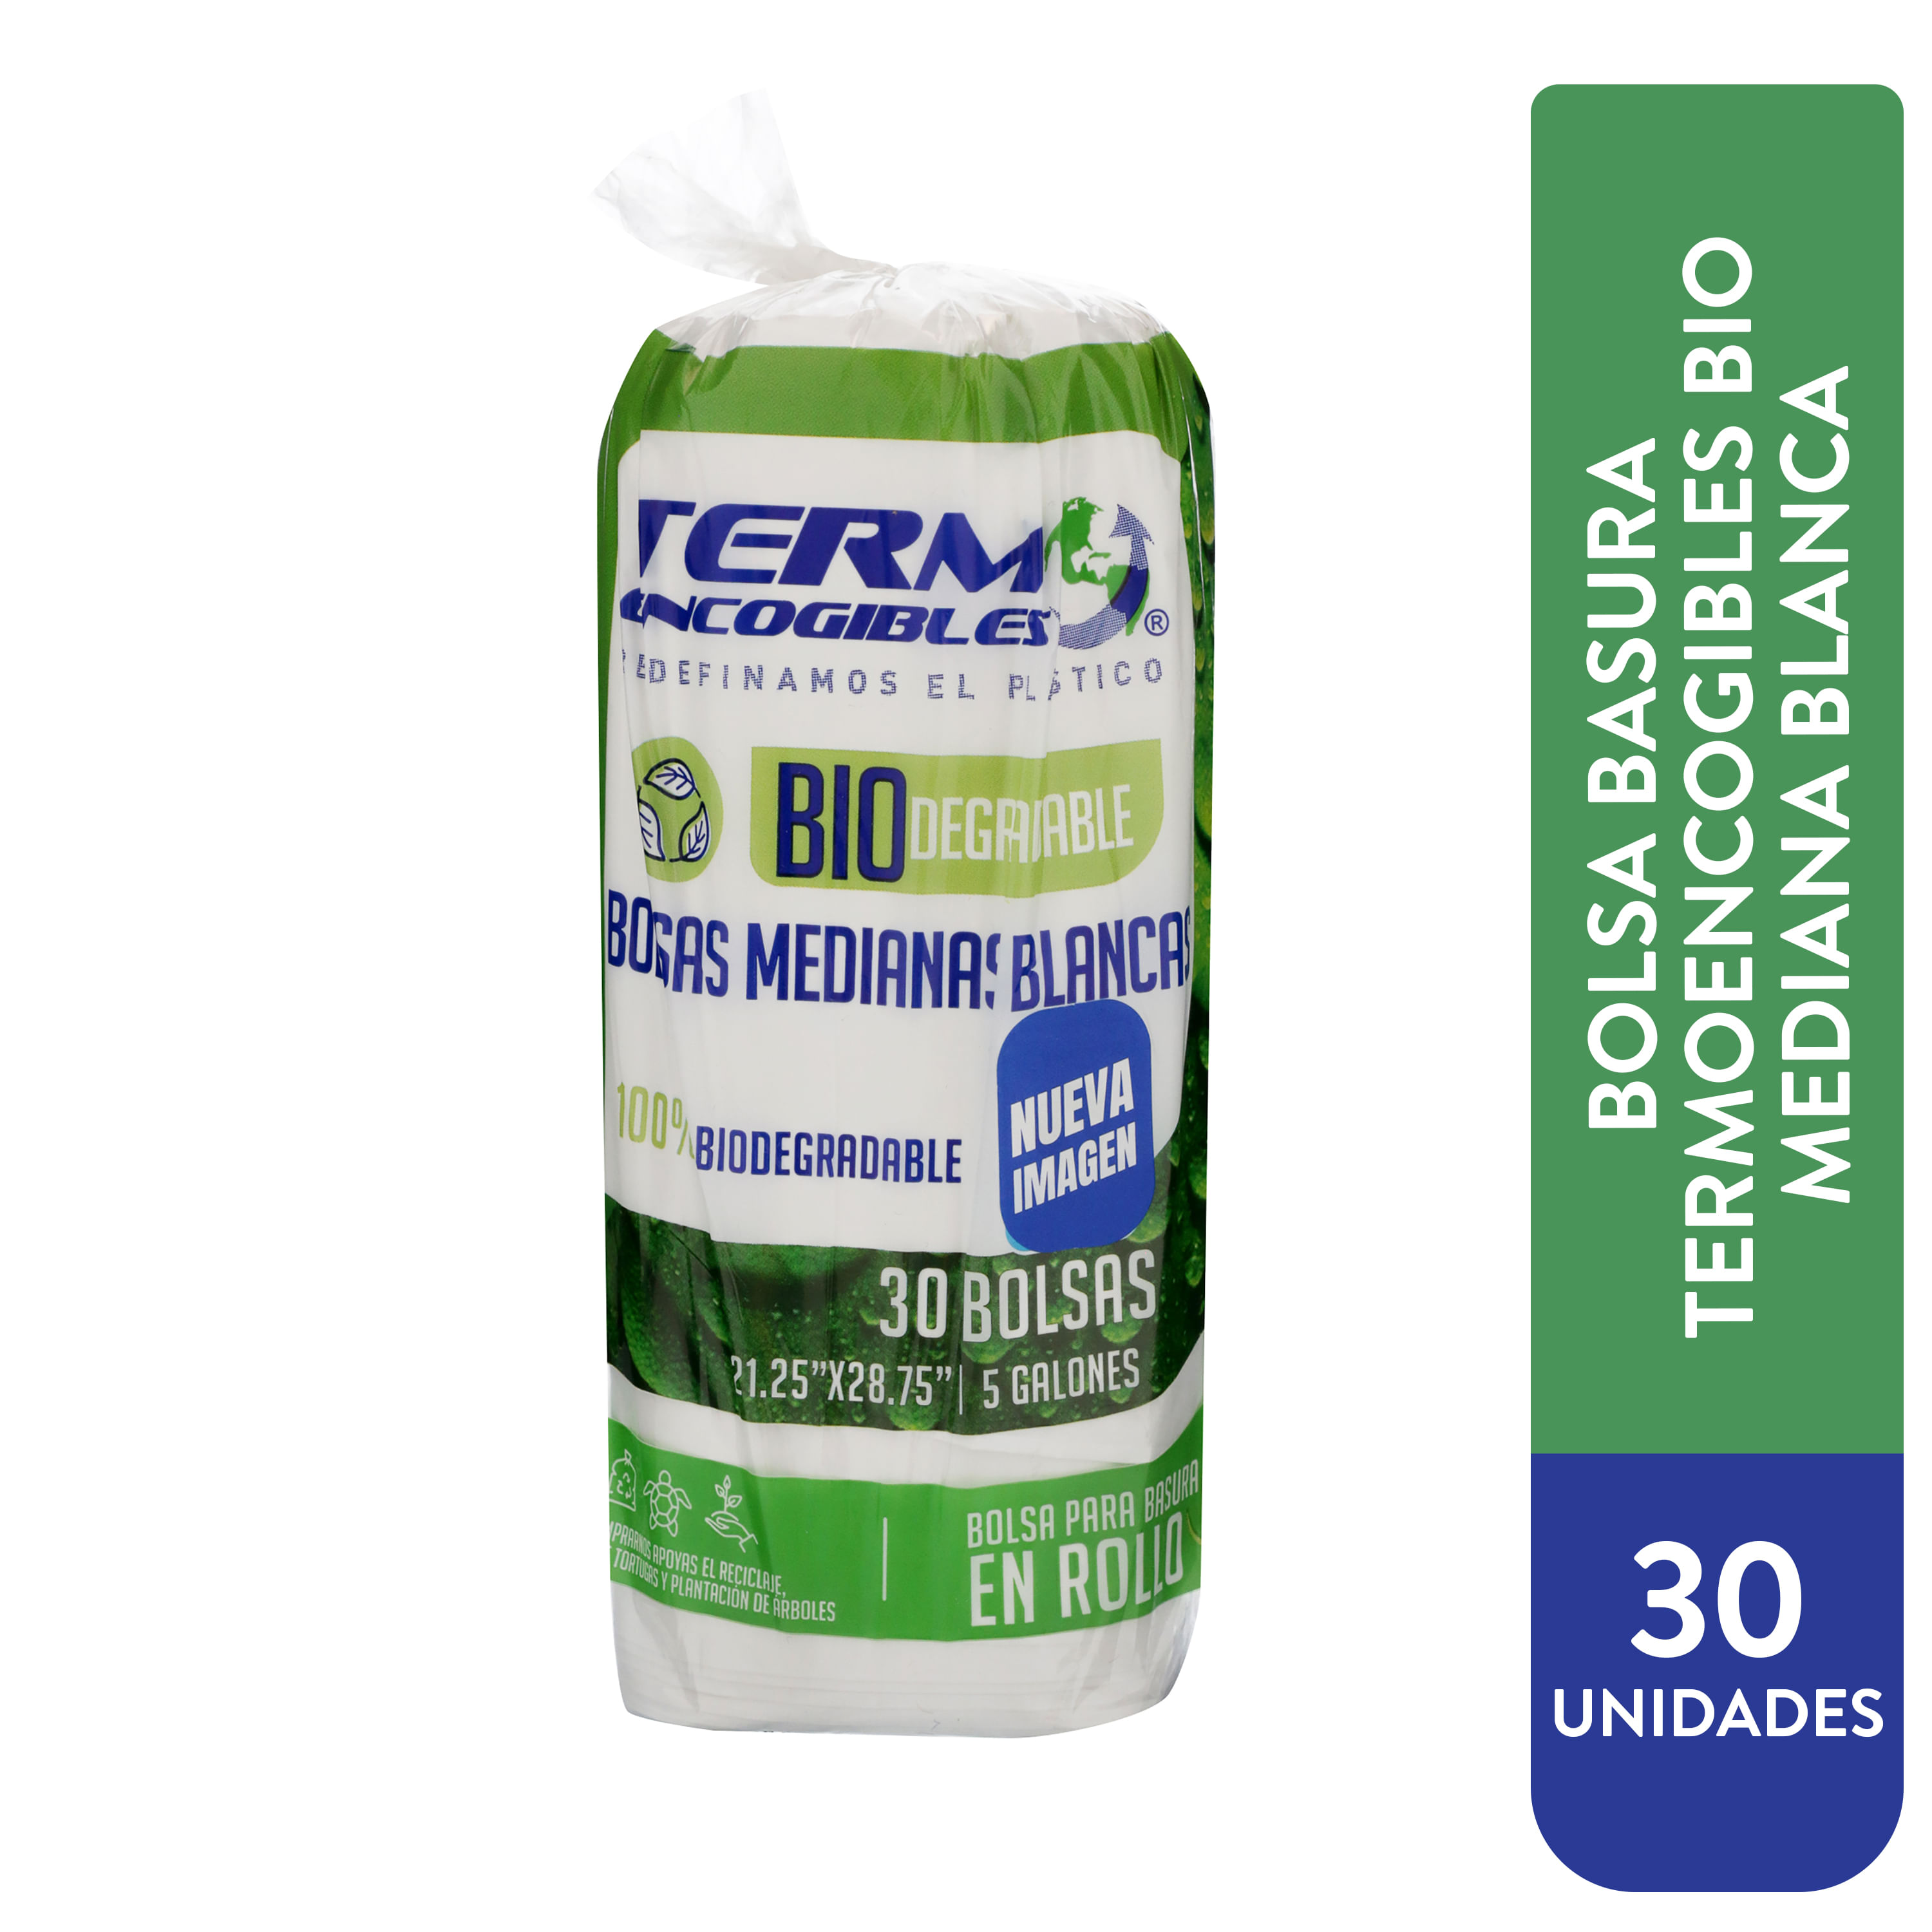 Boumo Distribution - Tenemos disponibles bolsas para basura #HomeSmart de 13  galones en un práctico empaque de cartón. Contiene 15 unidades.  #boumopanama #boumo #distribuidorespanama #supermercadospanama  #tiendaspanama #panama #pty #panamá